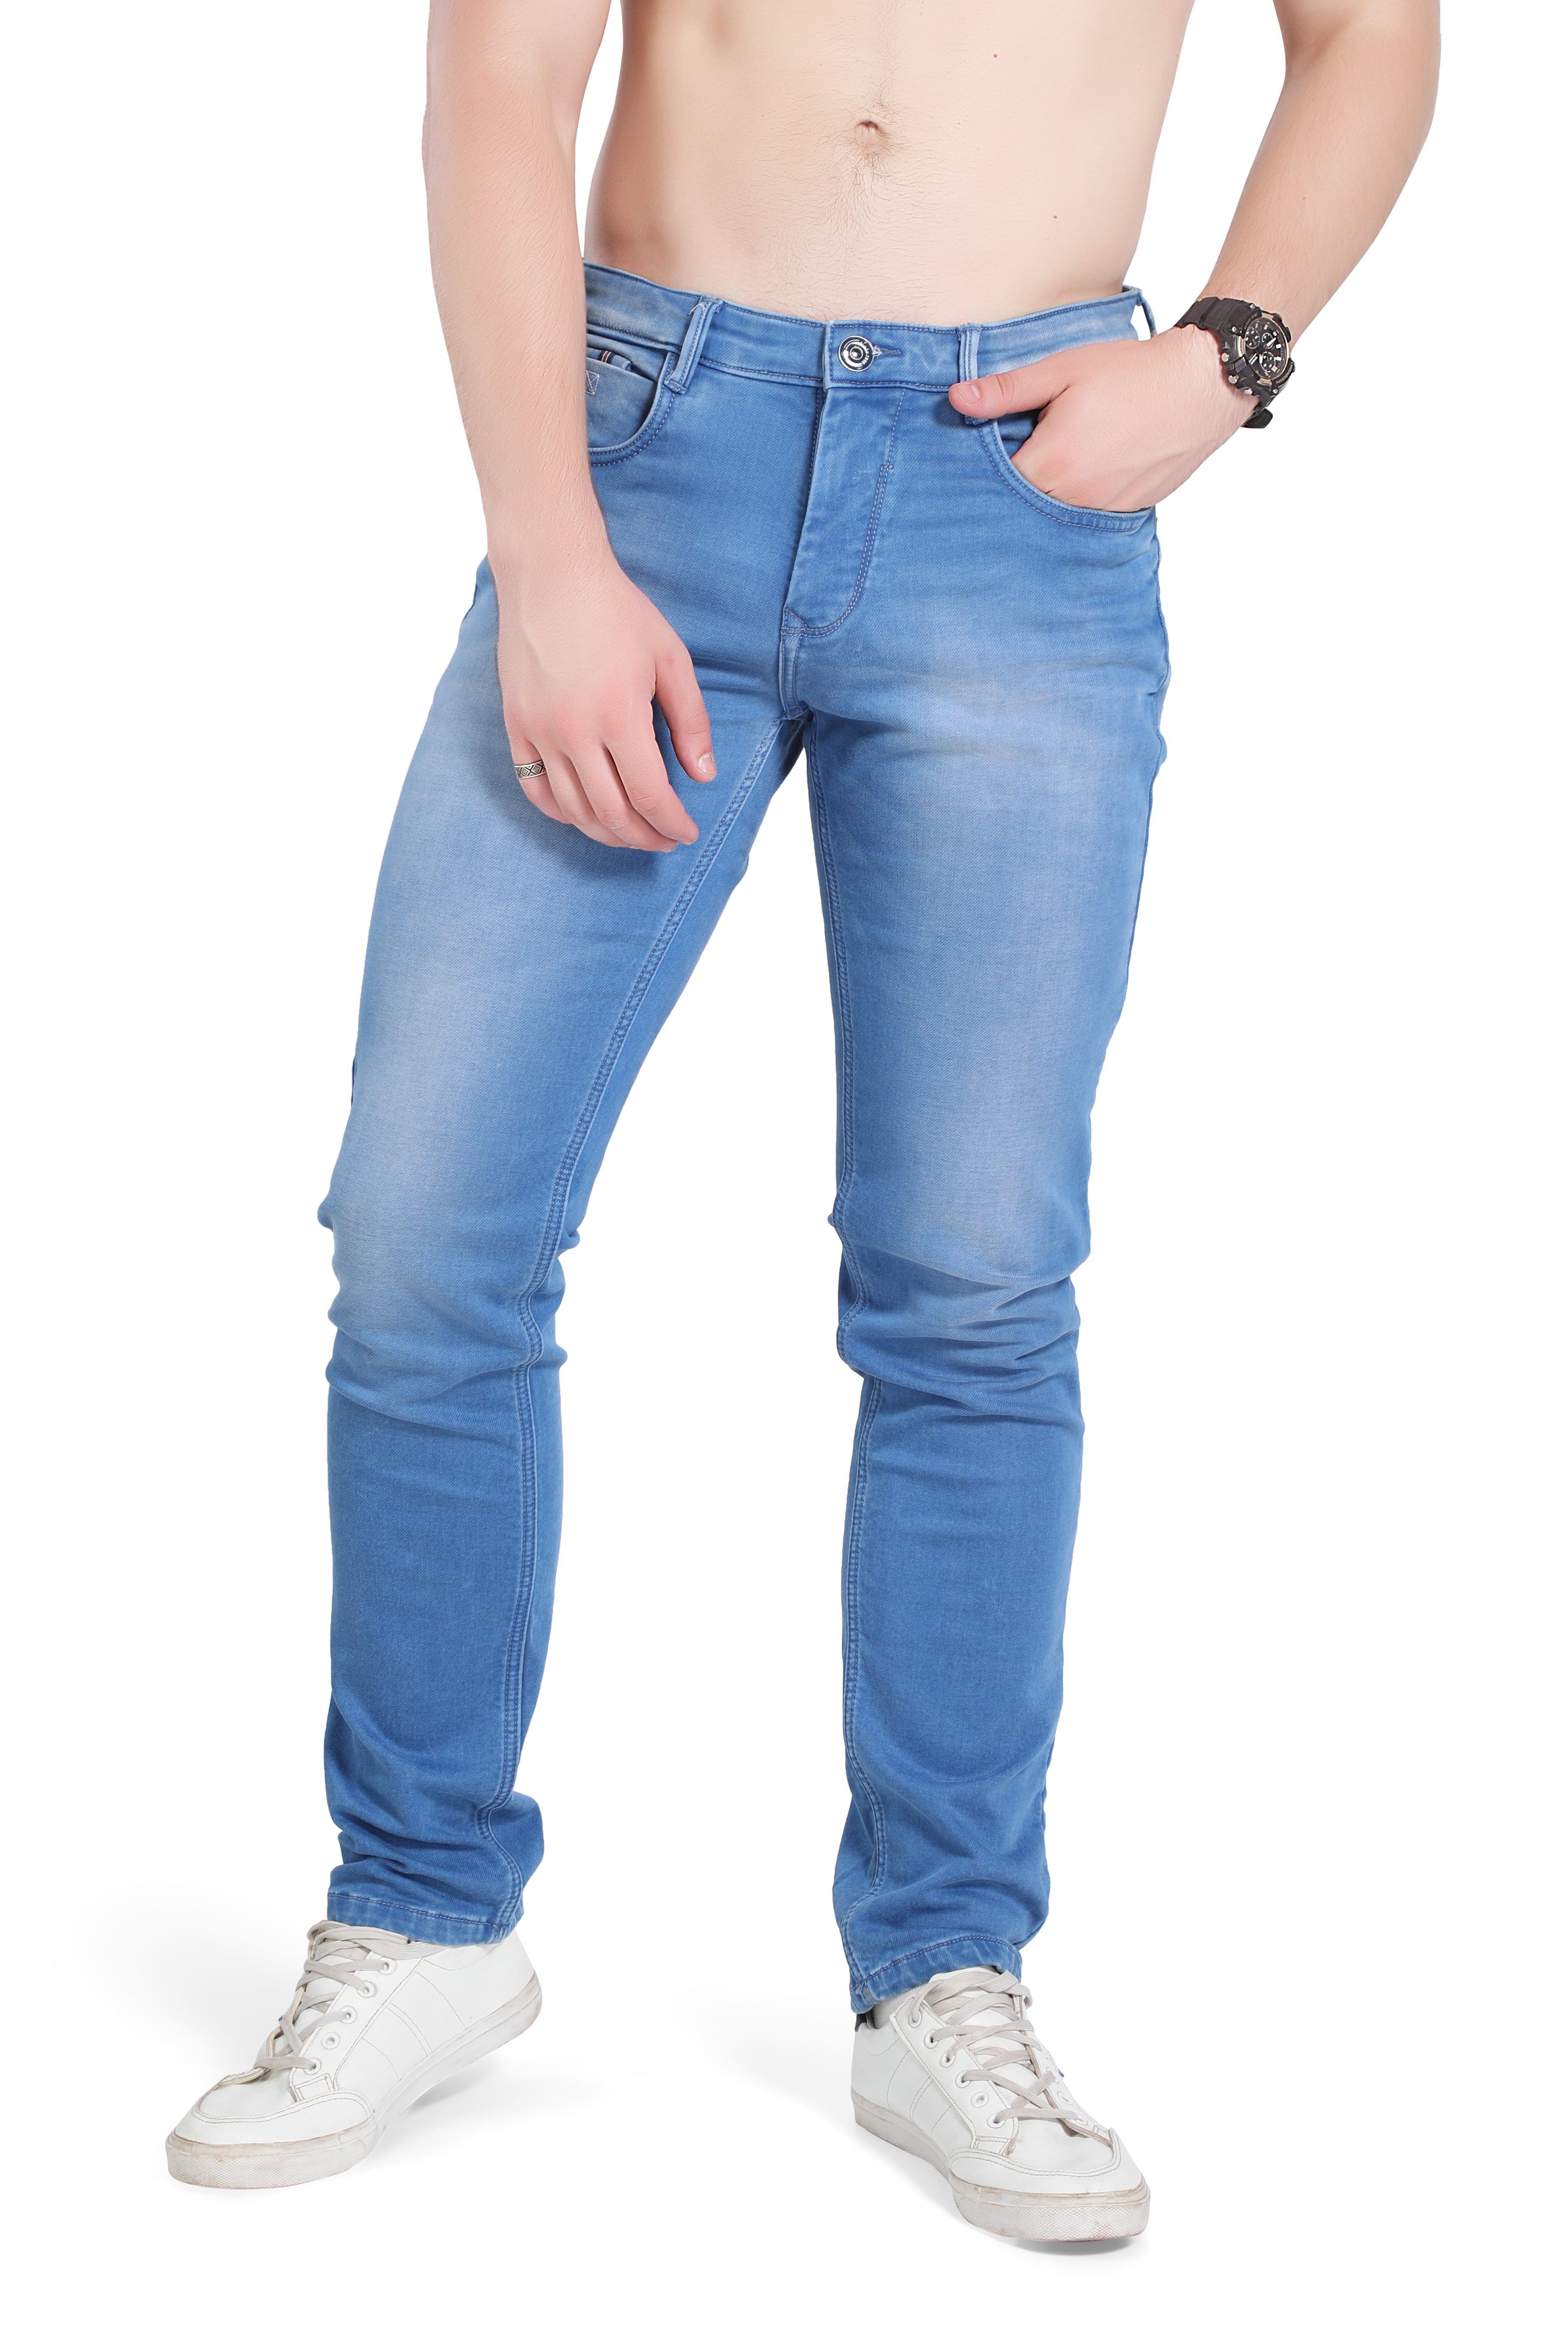 Patlun Jeans For Men